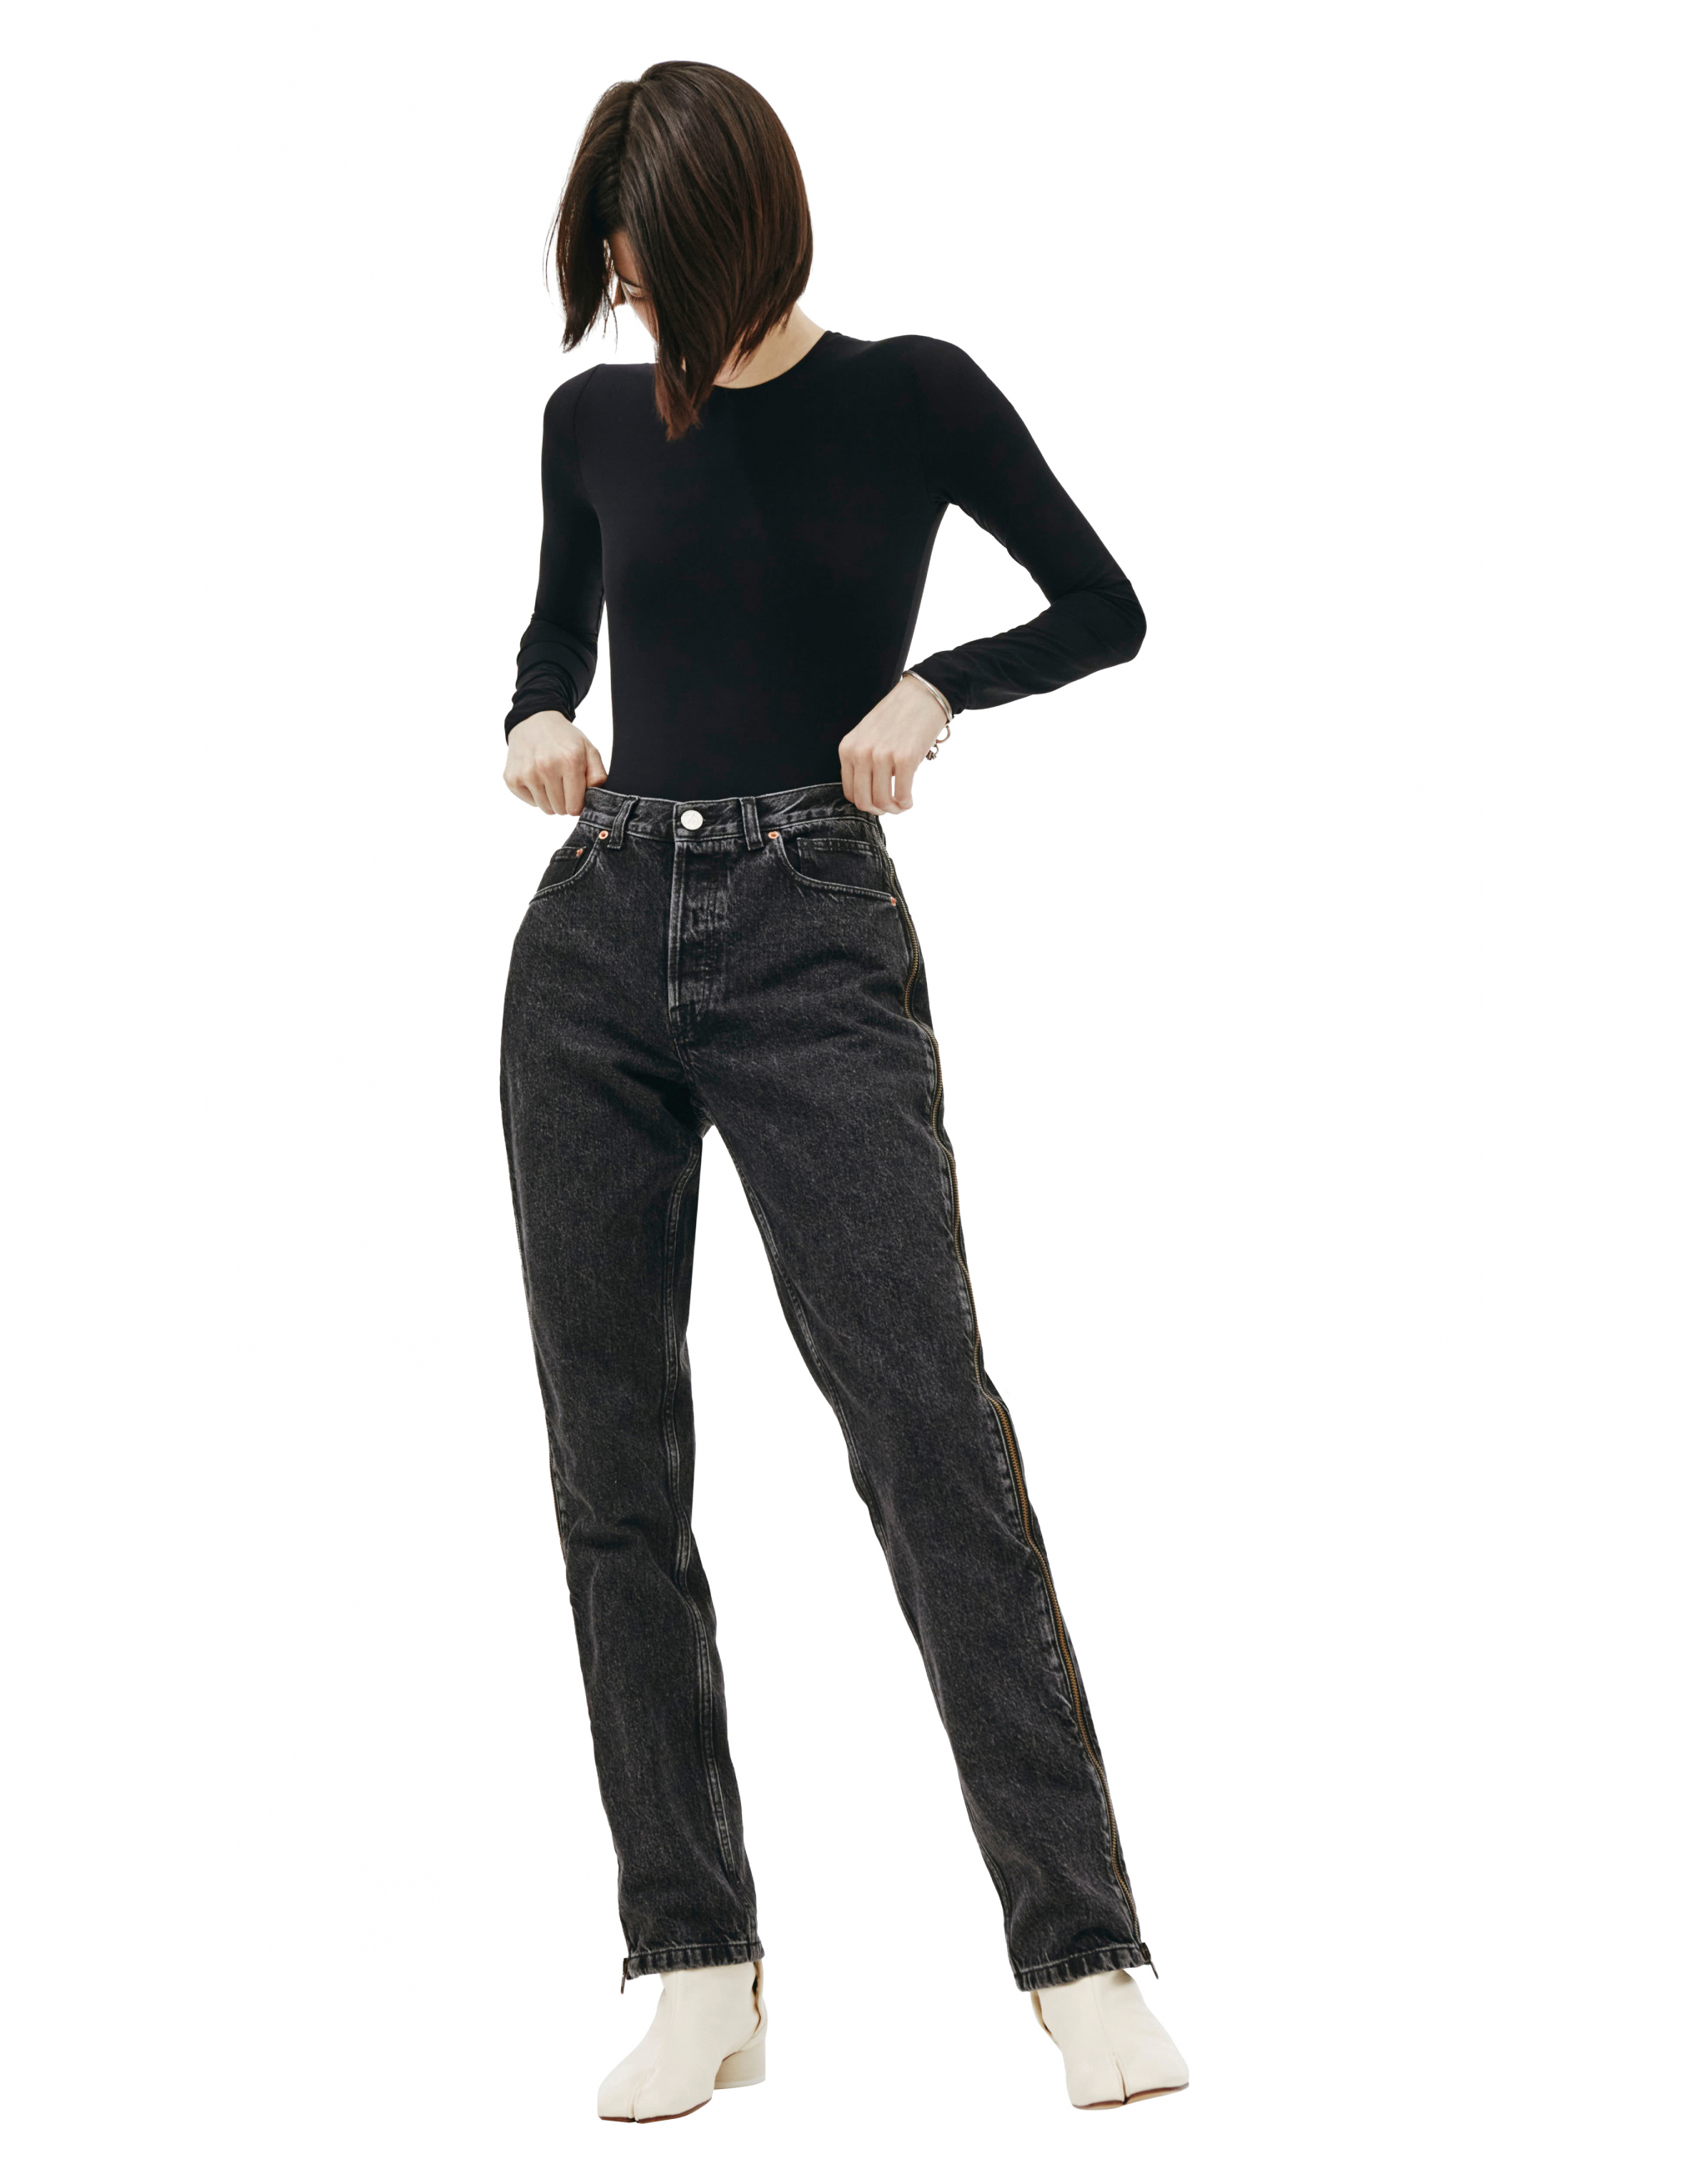 Черные джинсы с молниями по бокам - Vetements SS20PA332/blk Фото 4